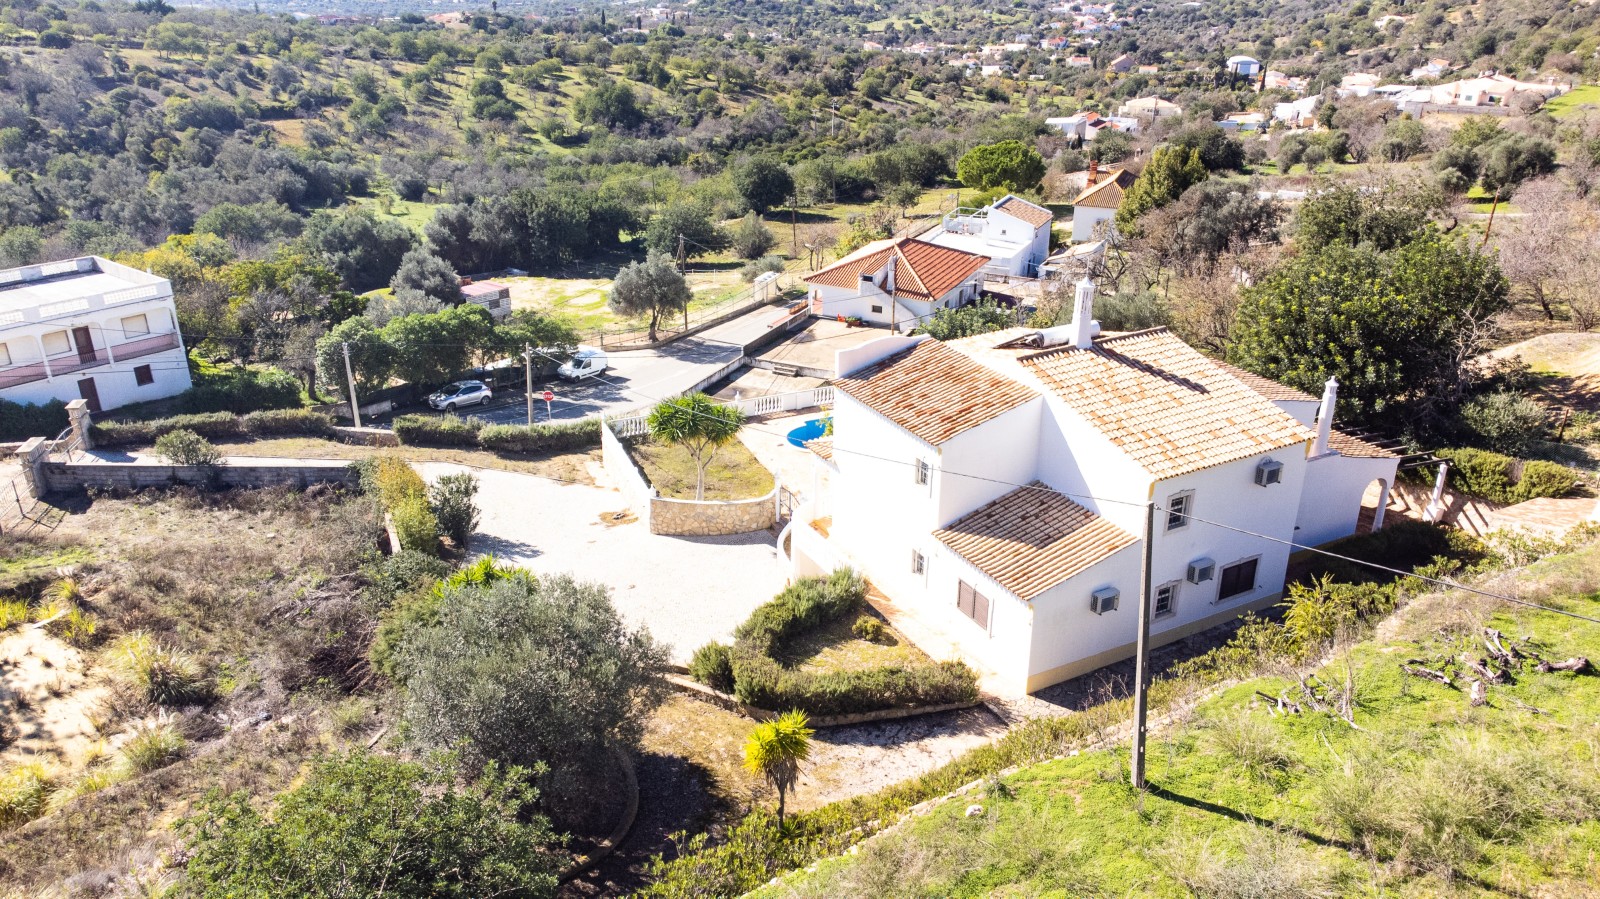 Moradia V4, com piscina, para venda, em Boliqueime, Loulé, Algarve_267418